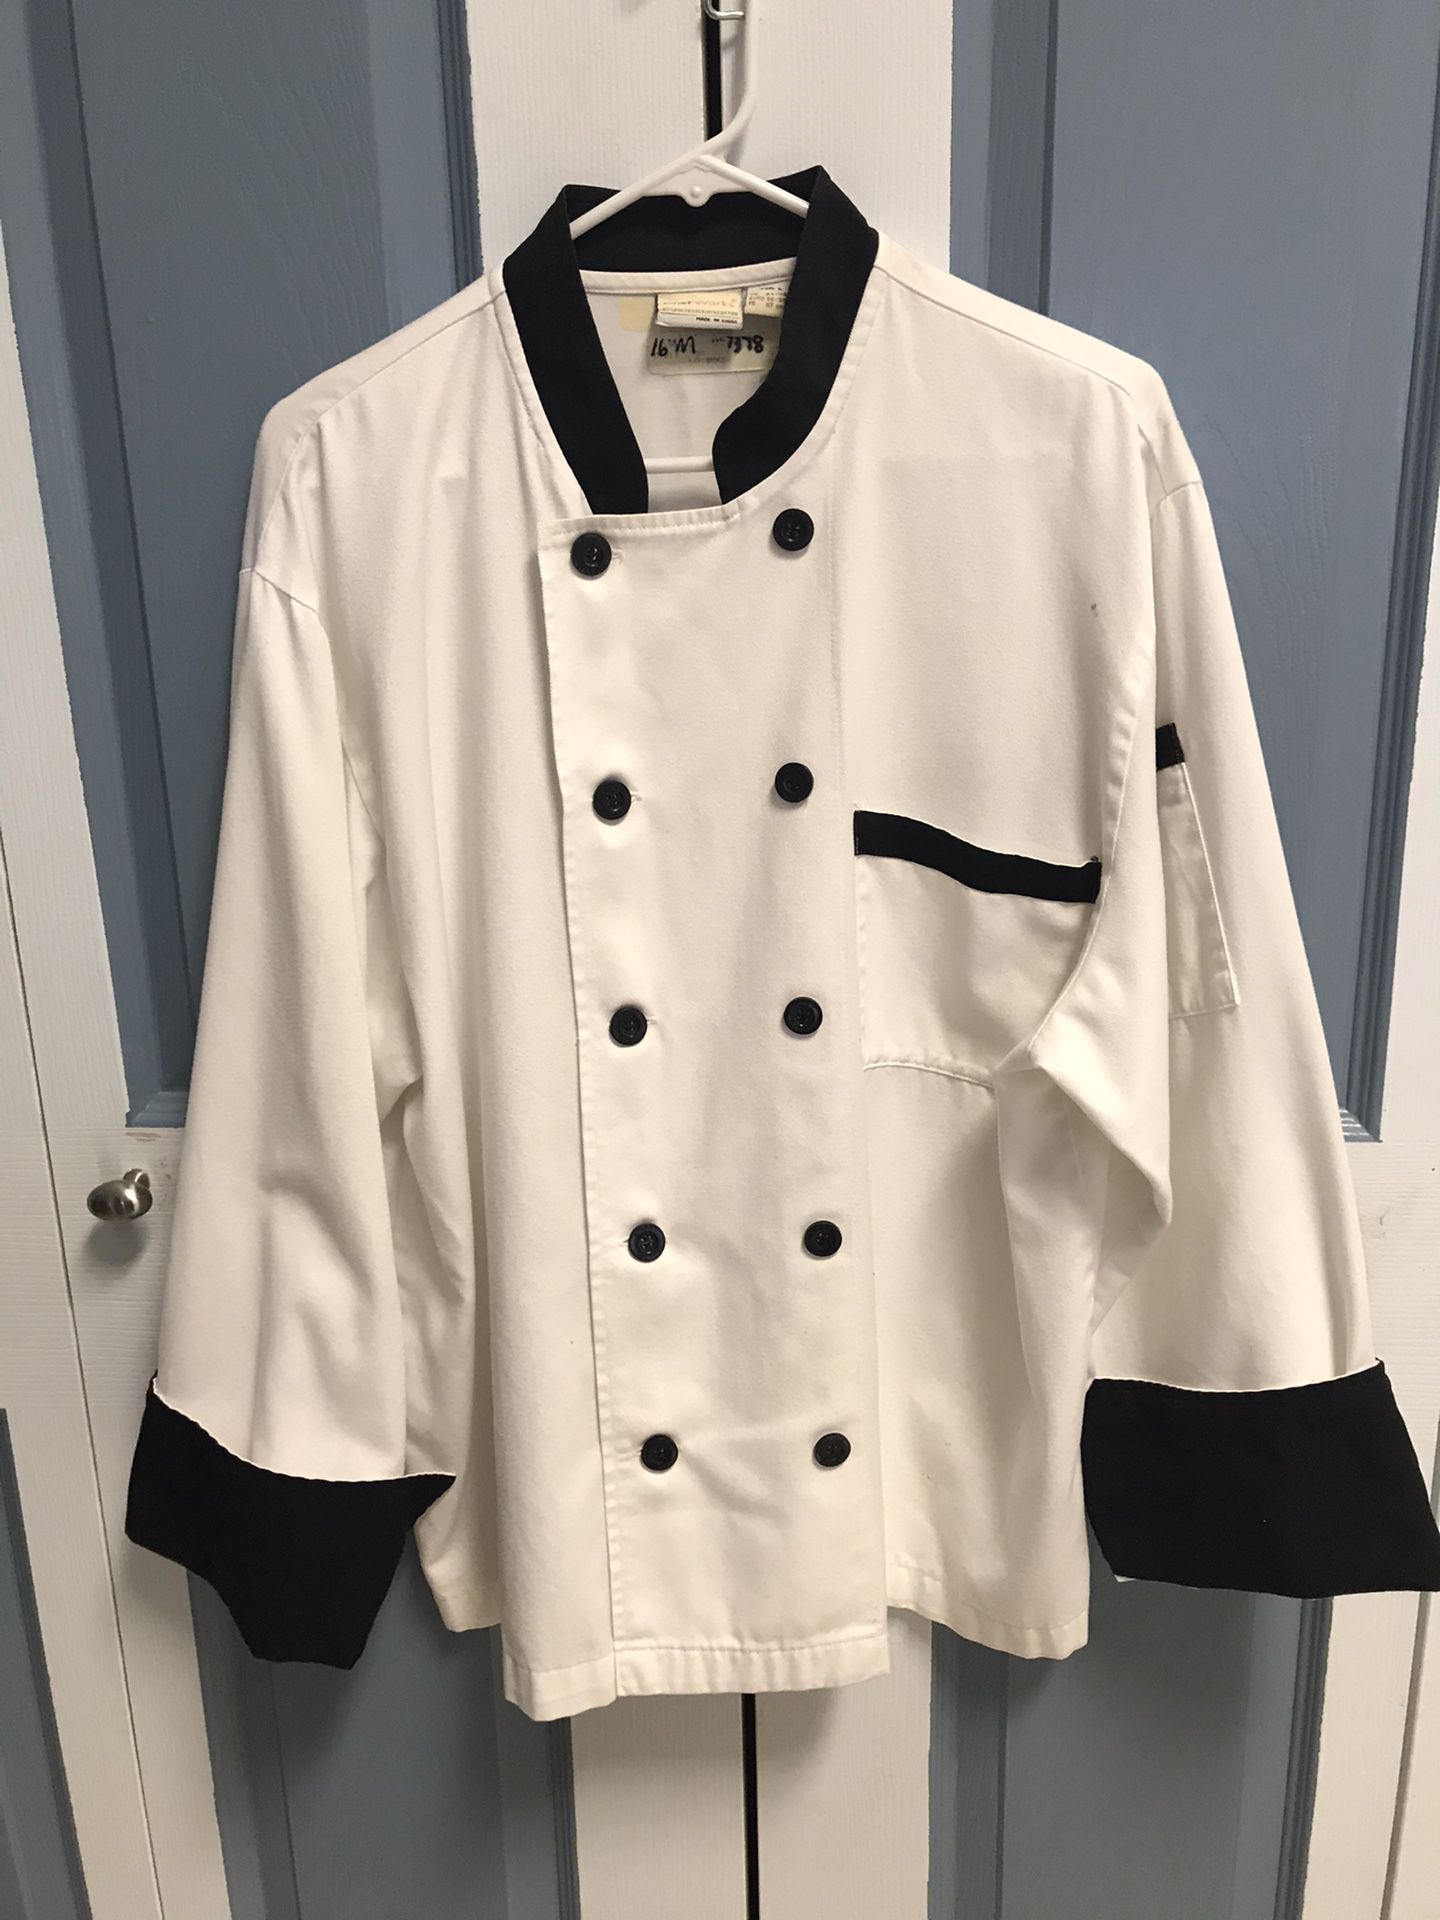 Chef coats